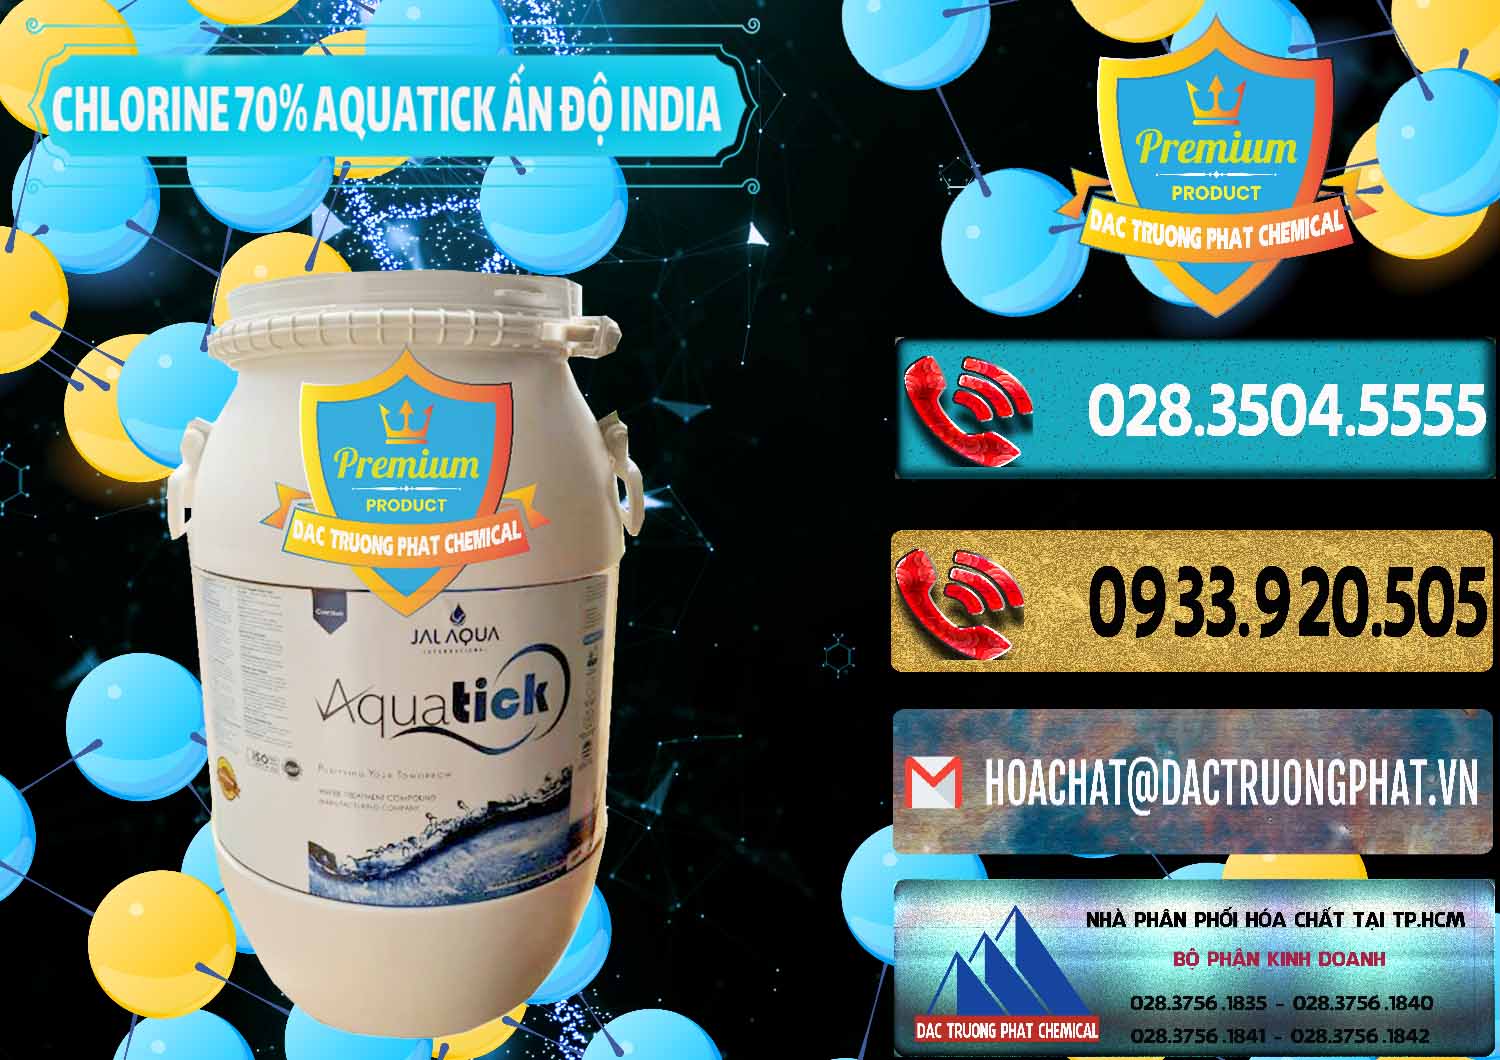 Cty chuyên kinh doanh & bán Chlorine – Clorin 70% Aquatick Jal Aqua Ấn Độ India - 0215 - Đơn vị cung cấp - bán hóa chất tại TP.HCM - hoachatdetnhuom.com